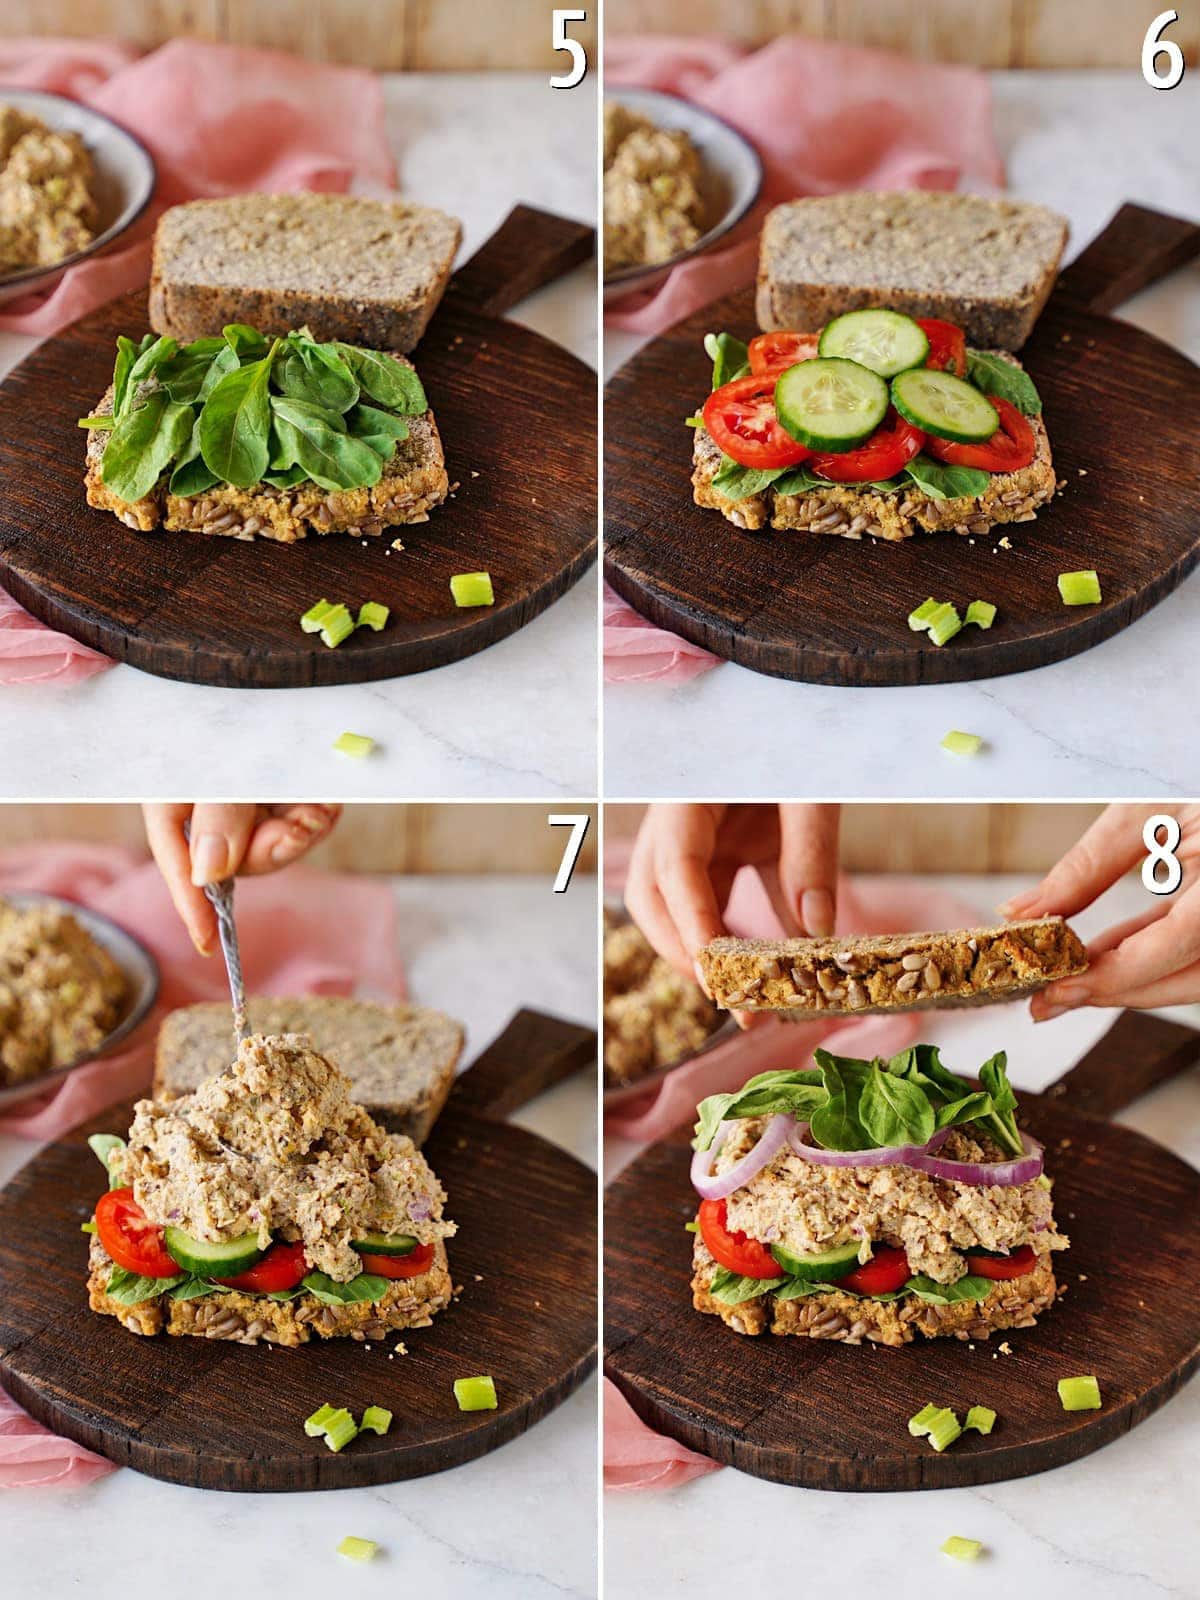 4 Schritt-für-Schritt-Bilder von der Zubereitung eines Kichererbsen-Thunfischsalat-Sandwichs